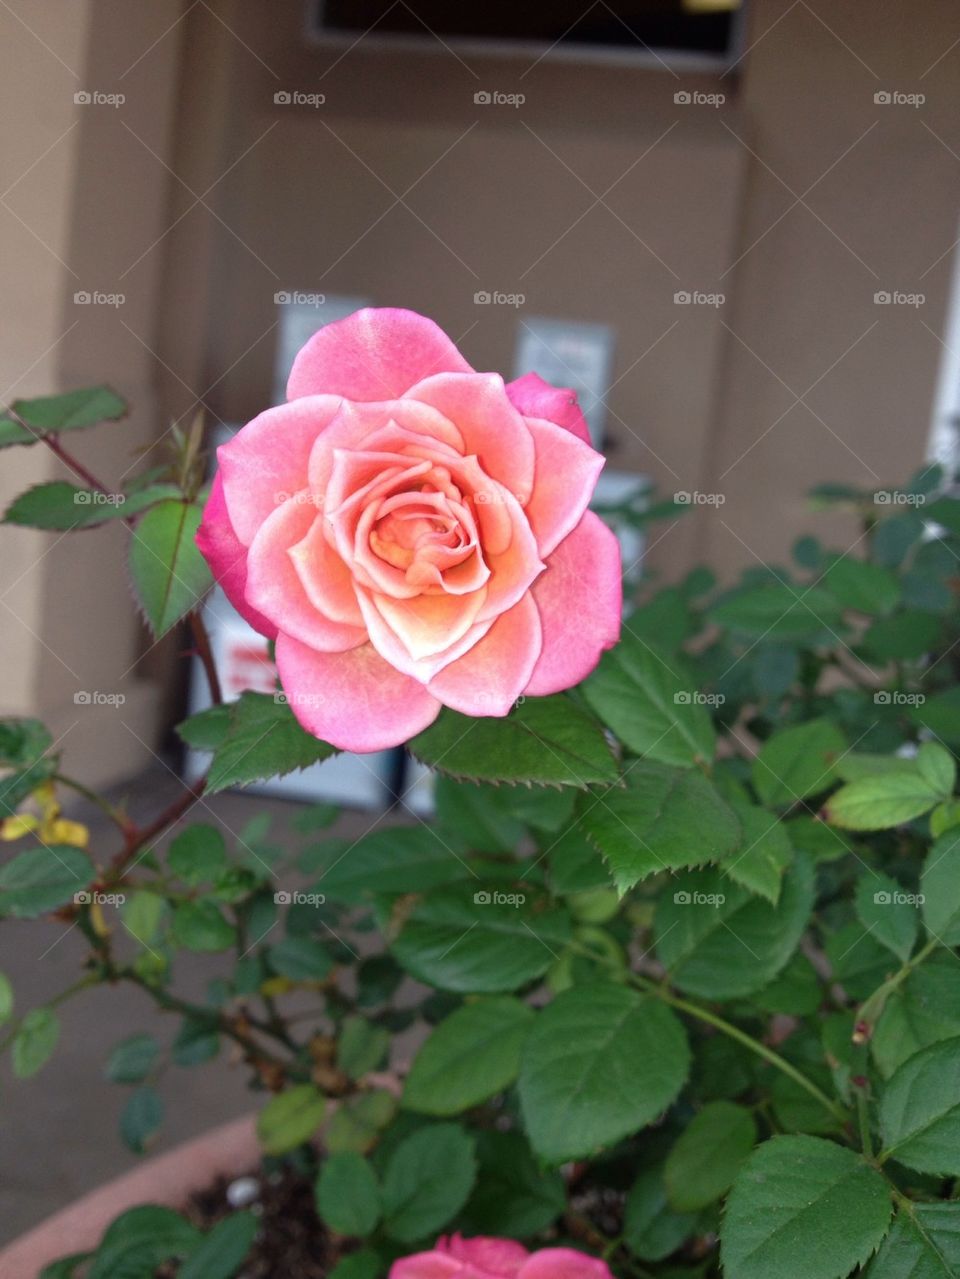 Pokey rose